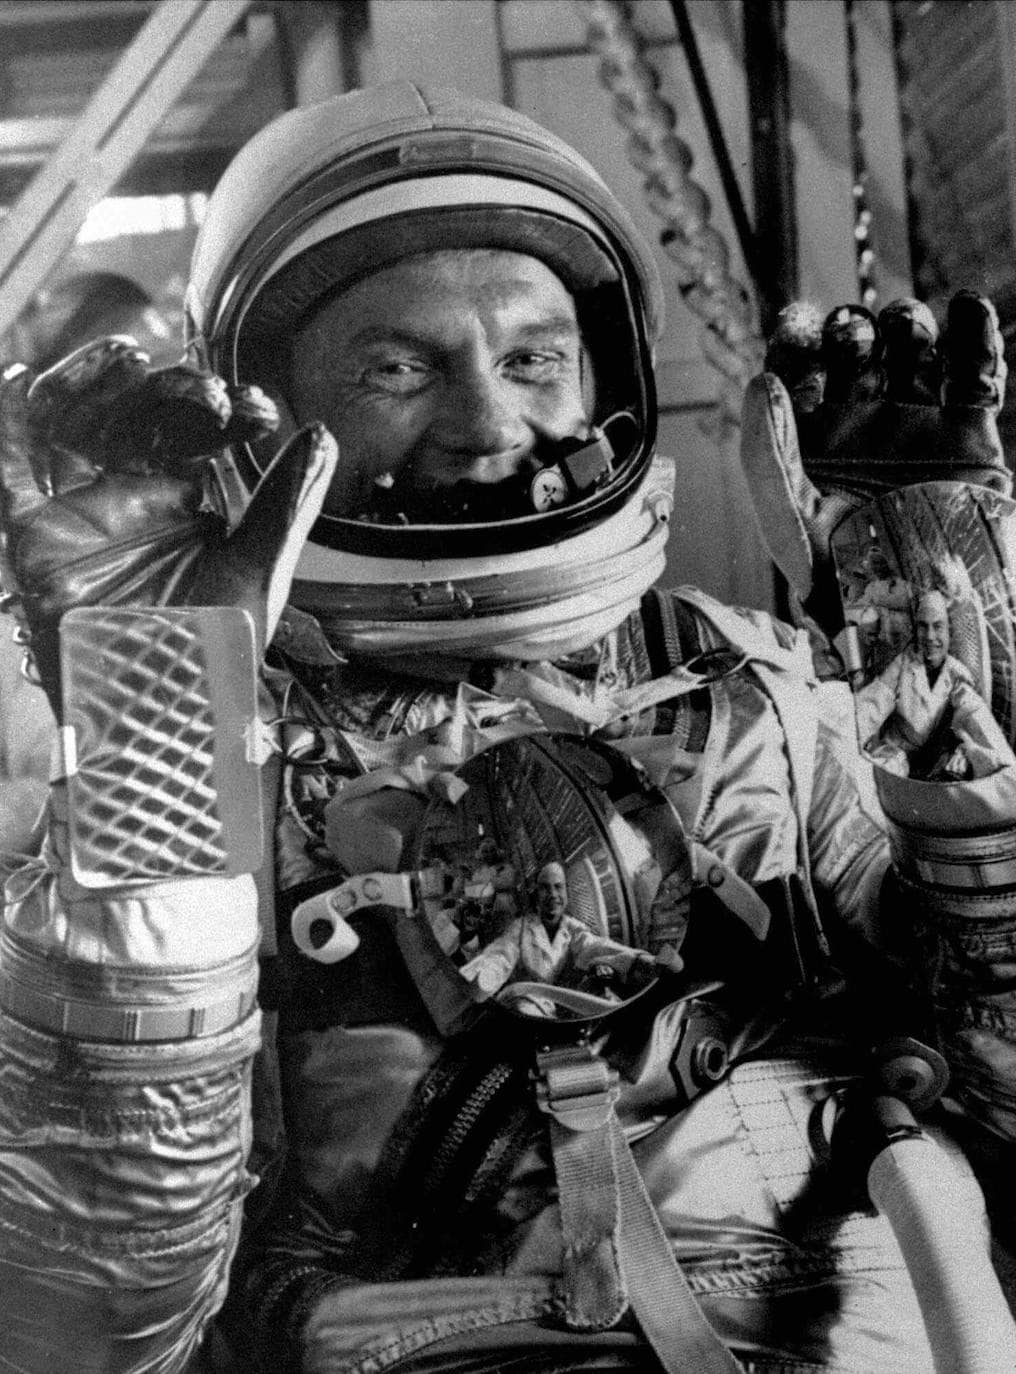 El senador John Glenn, exastronauta, el primero que estuvo en órbita alrededor de la Tierra.